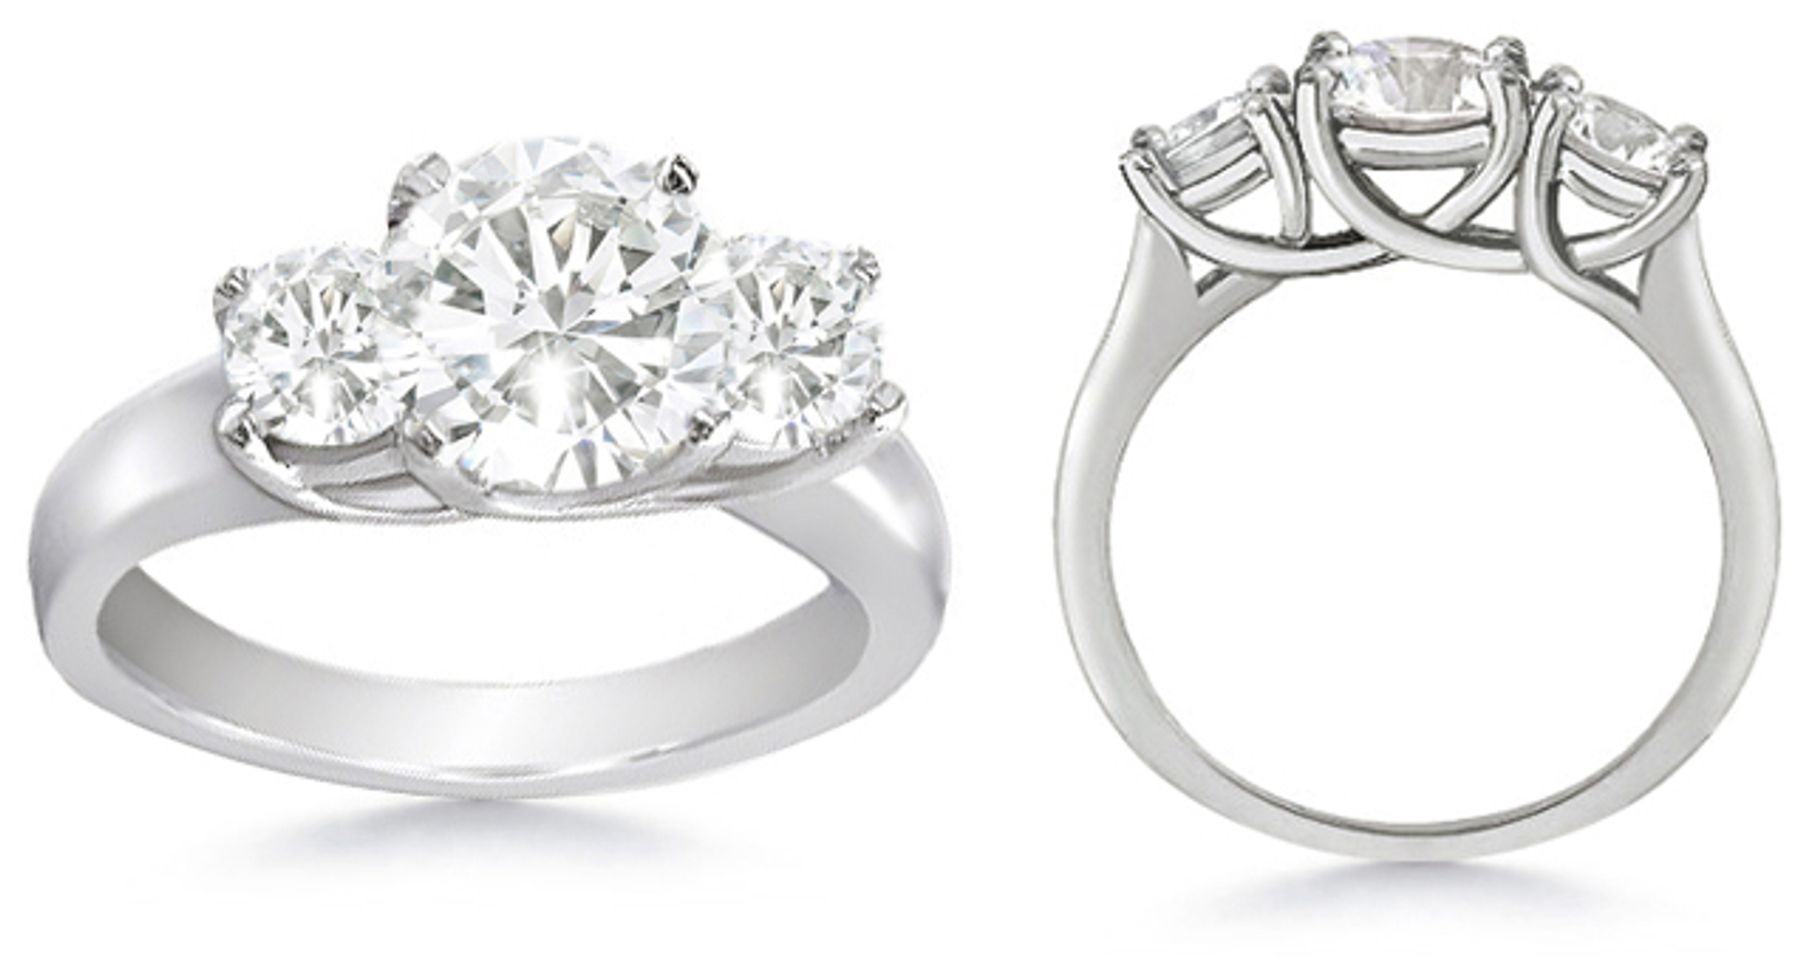 Diamond Anniversary Rings: Three Stone (Three Round Diamonds) Ring in Platinum